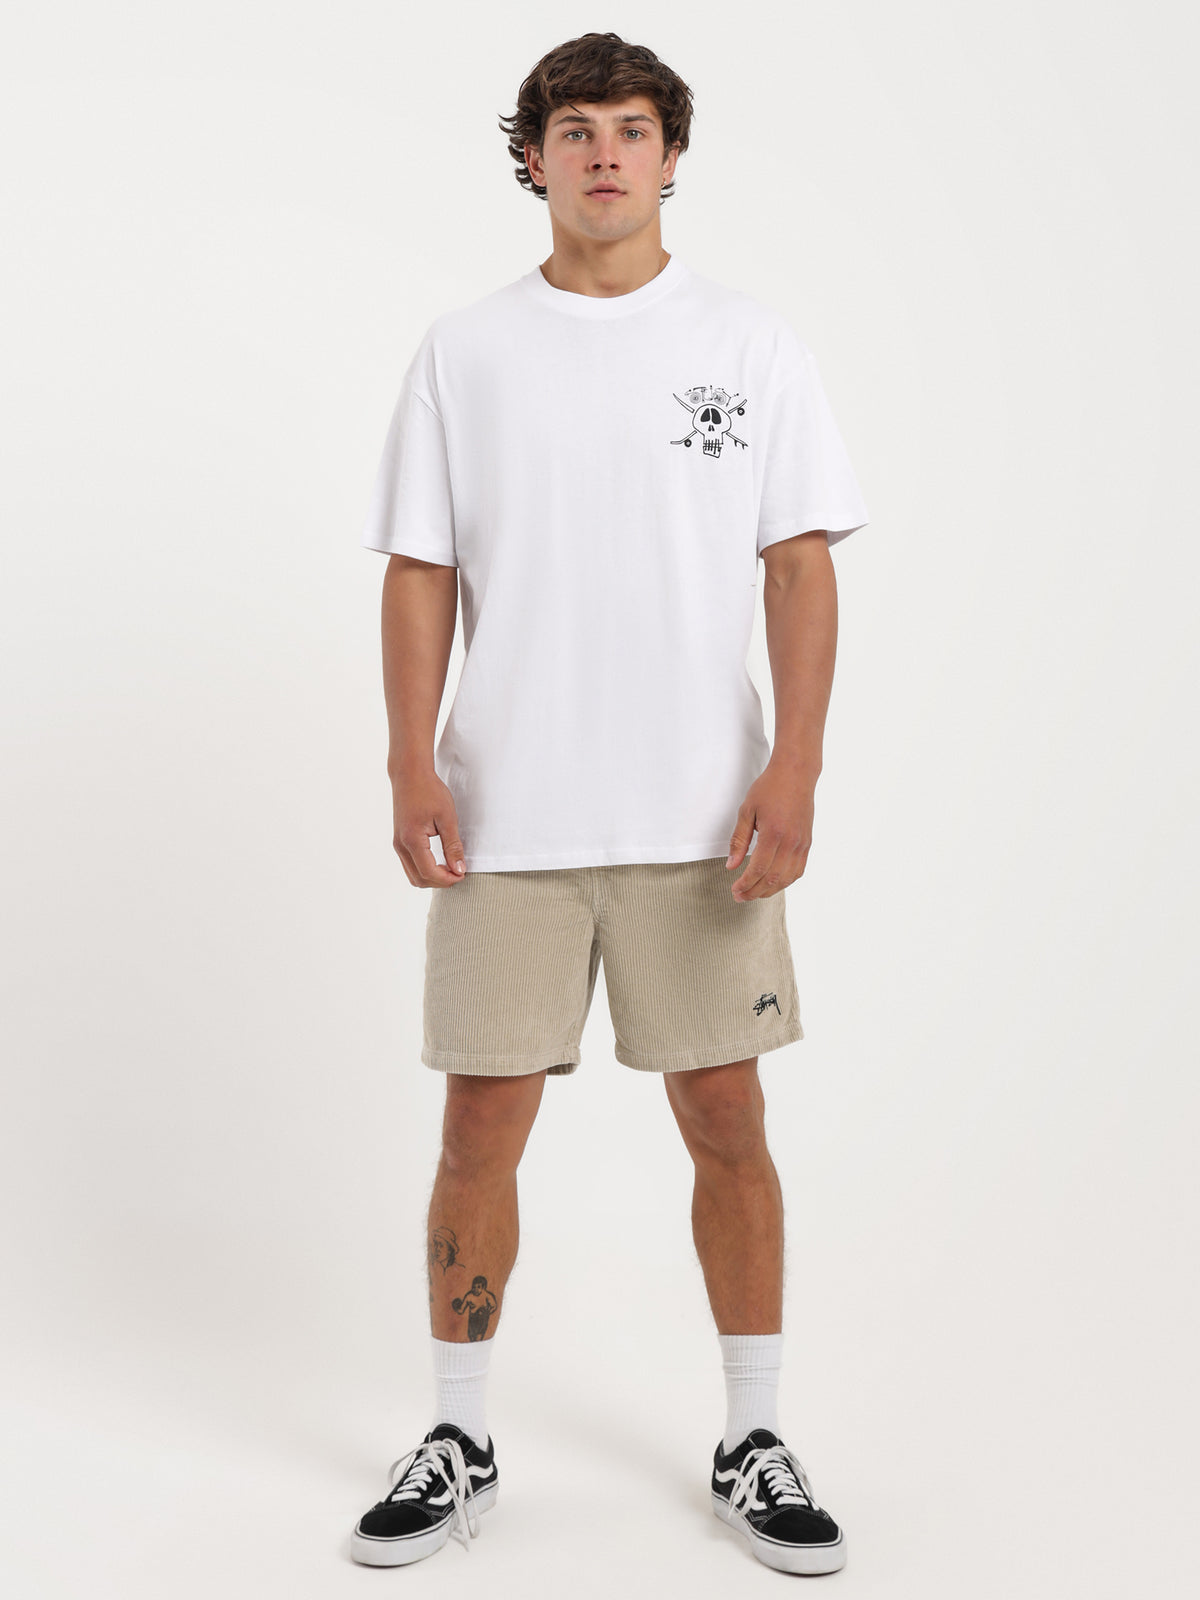 Surf Skate Skull 50/50 T-Shirt in White